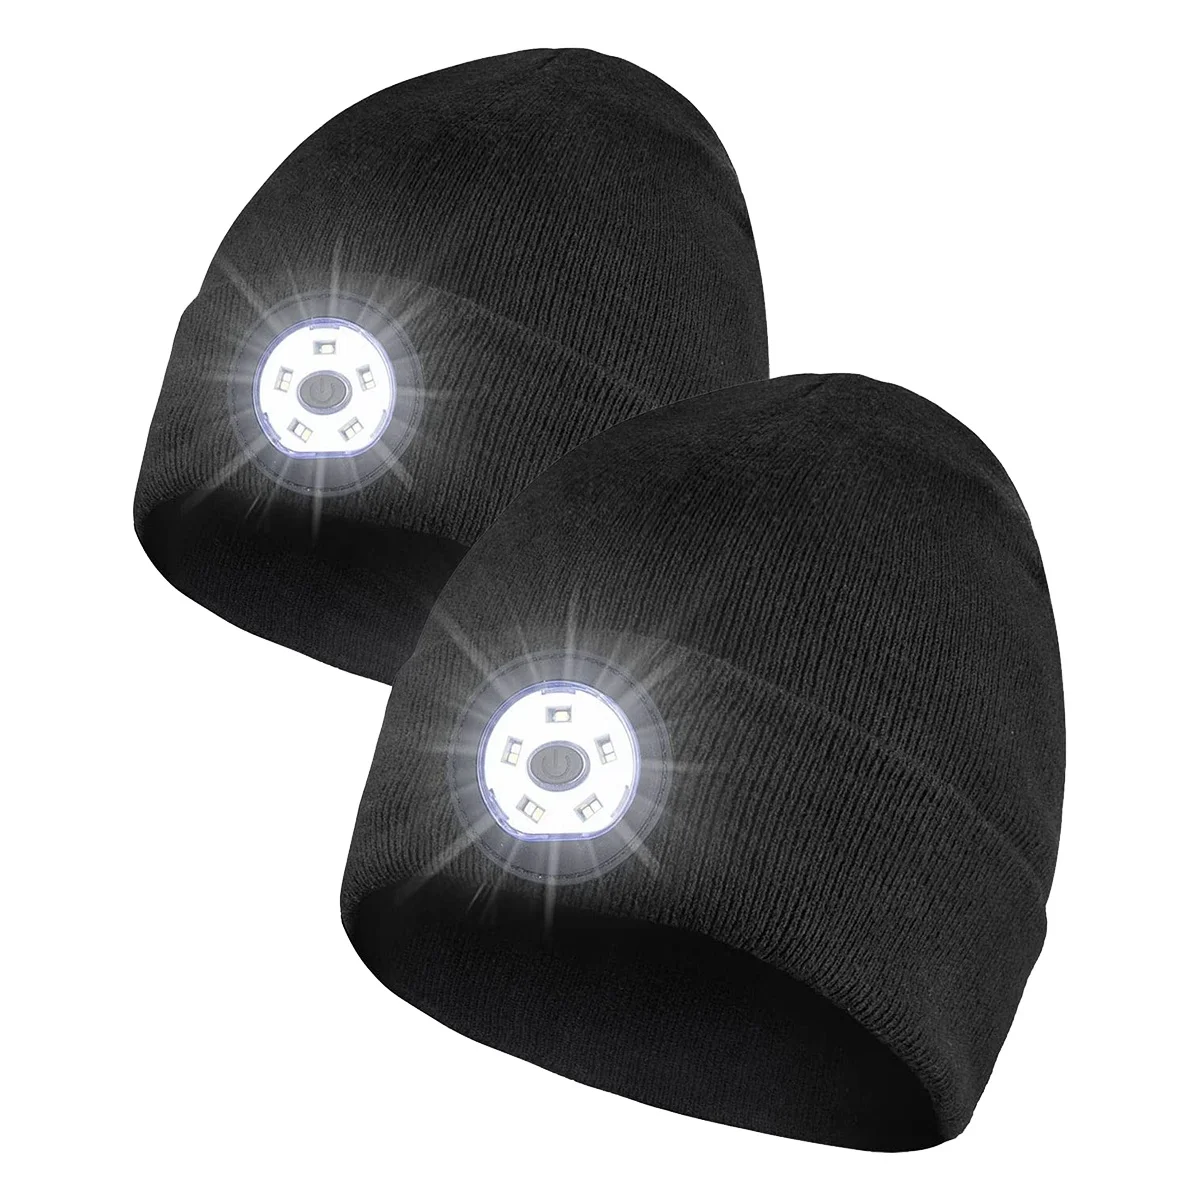 

Облегающая шапка унисекс, трикотажная шапка для свободных рук с 5 светодиодный 3 режимами, Черная